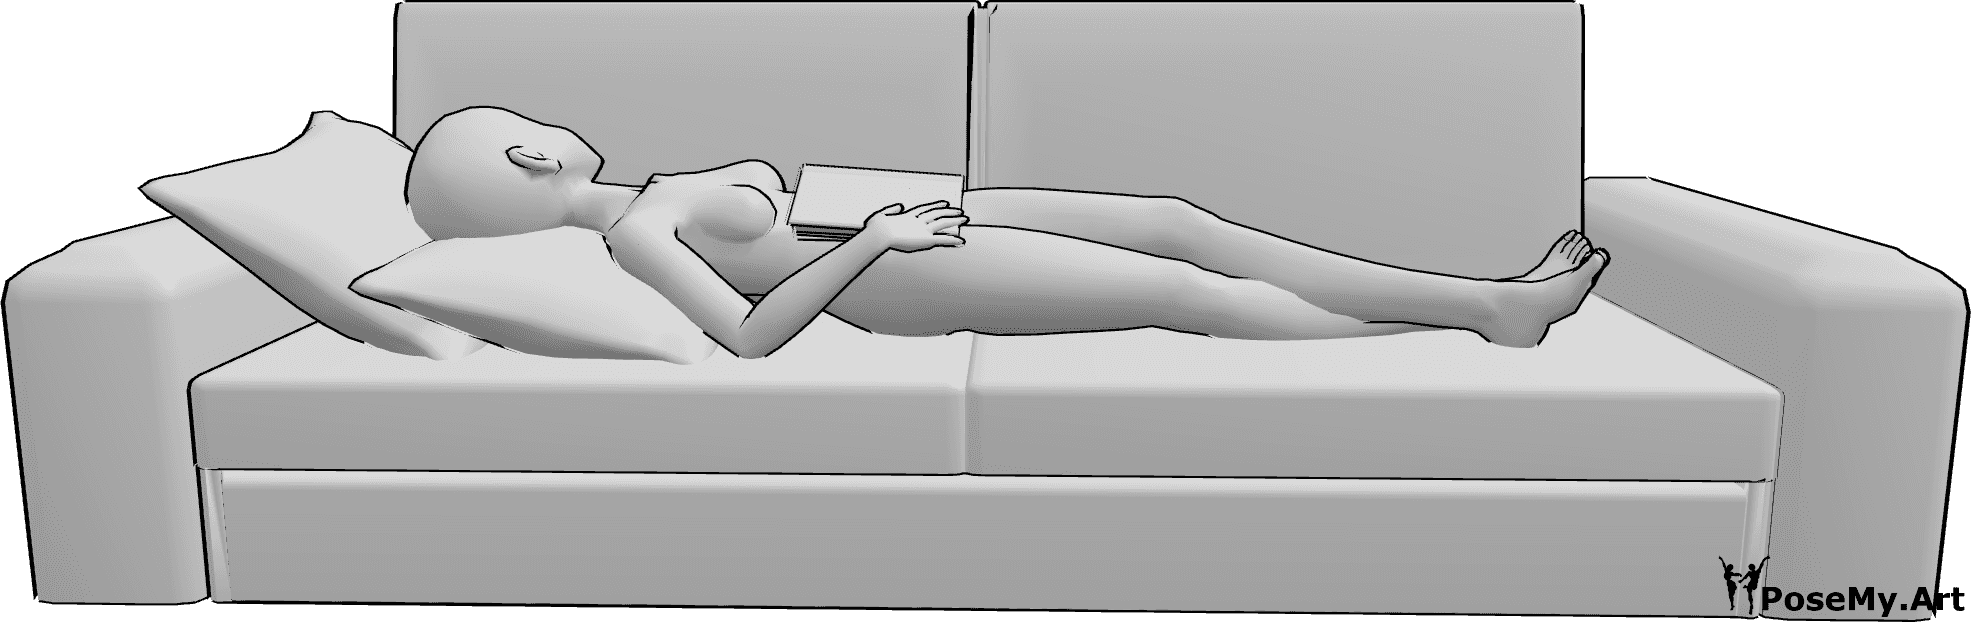 Riferimento alle pose- Anime che leggono la posa del sonno - Una donna di sesso maschile è sdraiata supina sul divano e tiene in mano un libro mentre dorme.